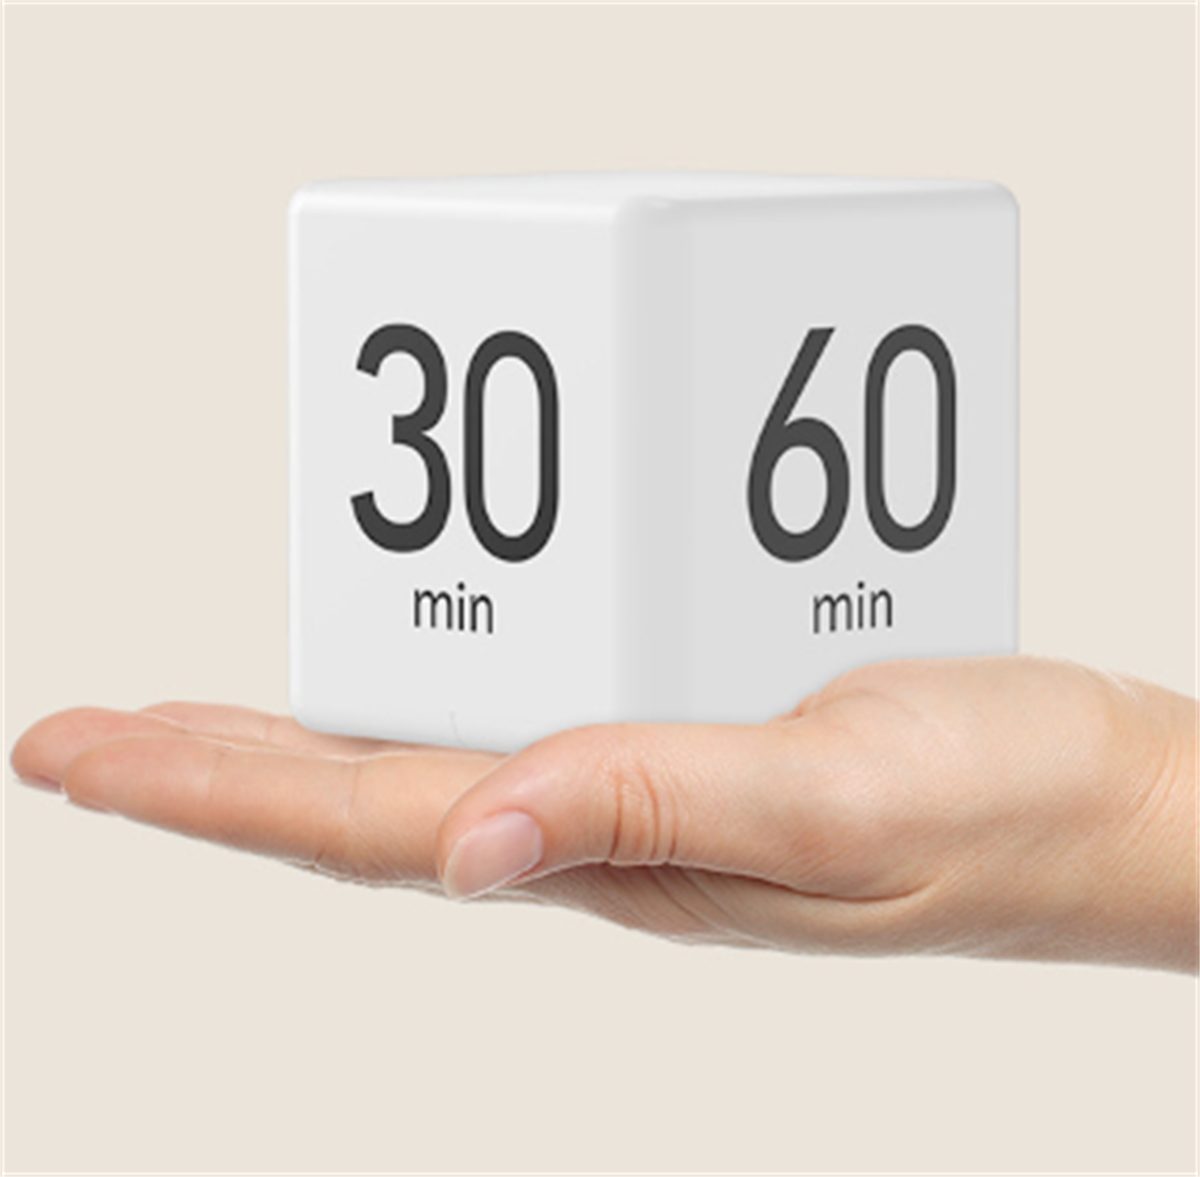 Weiß carefully Küchen-Timing-Erinnerung Sport- selected Cube Countdown-Timer, Rubik's Wecker und